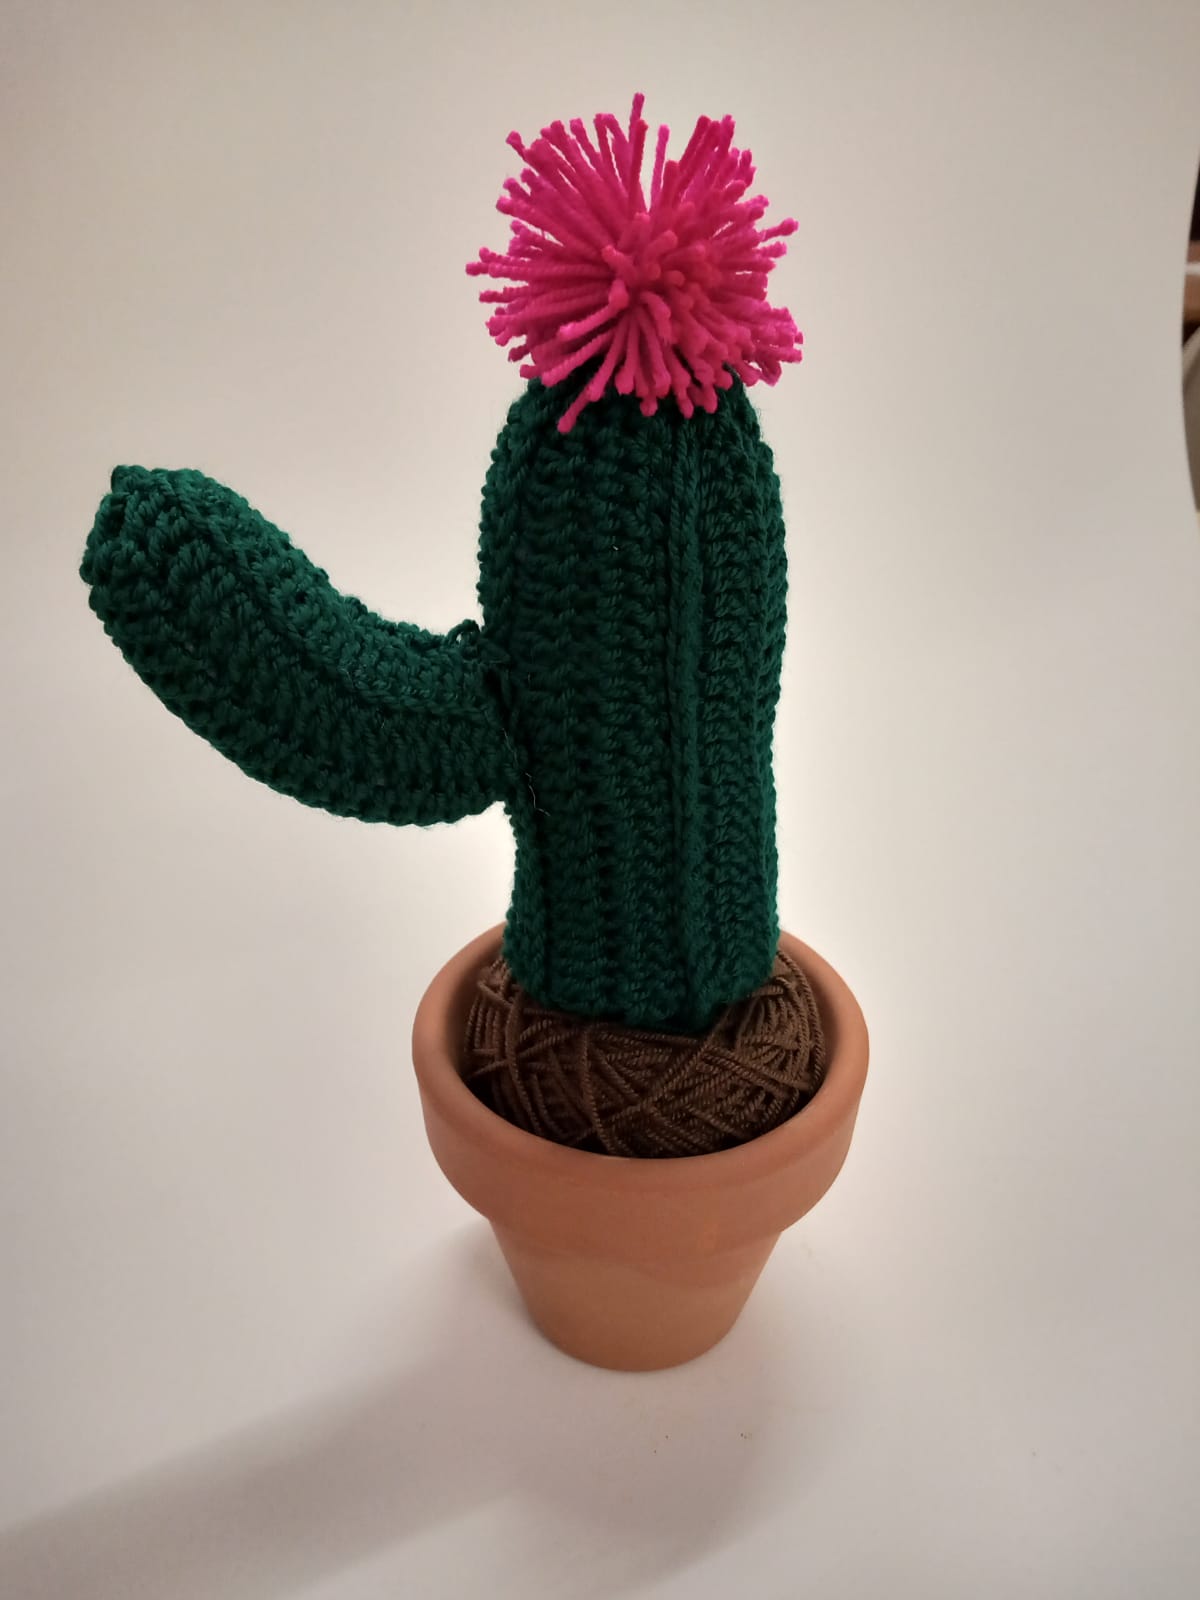 Curso de Crochet en Barcelona: 🌵 Hagamos un Cactus 🌵